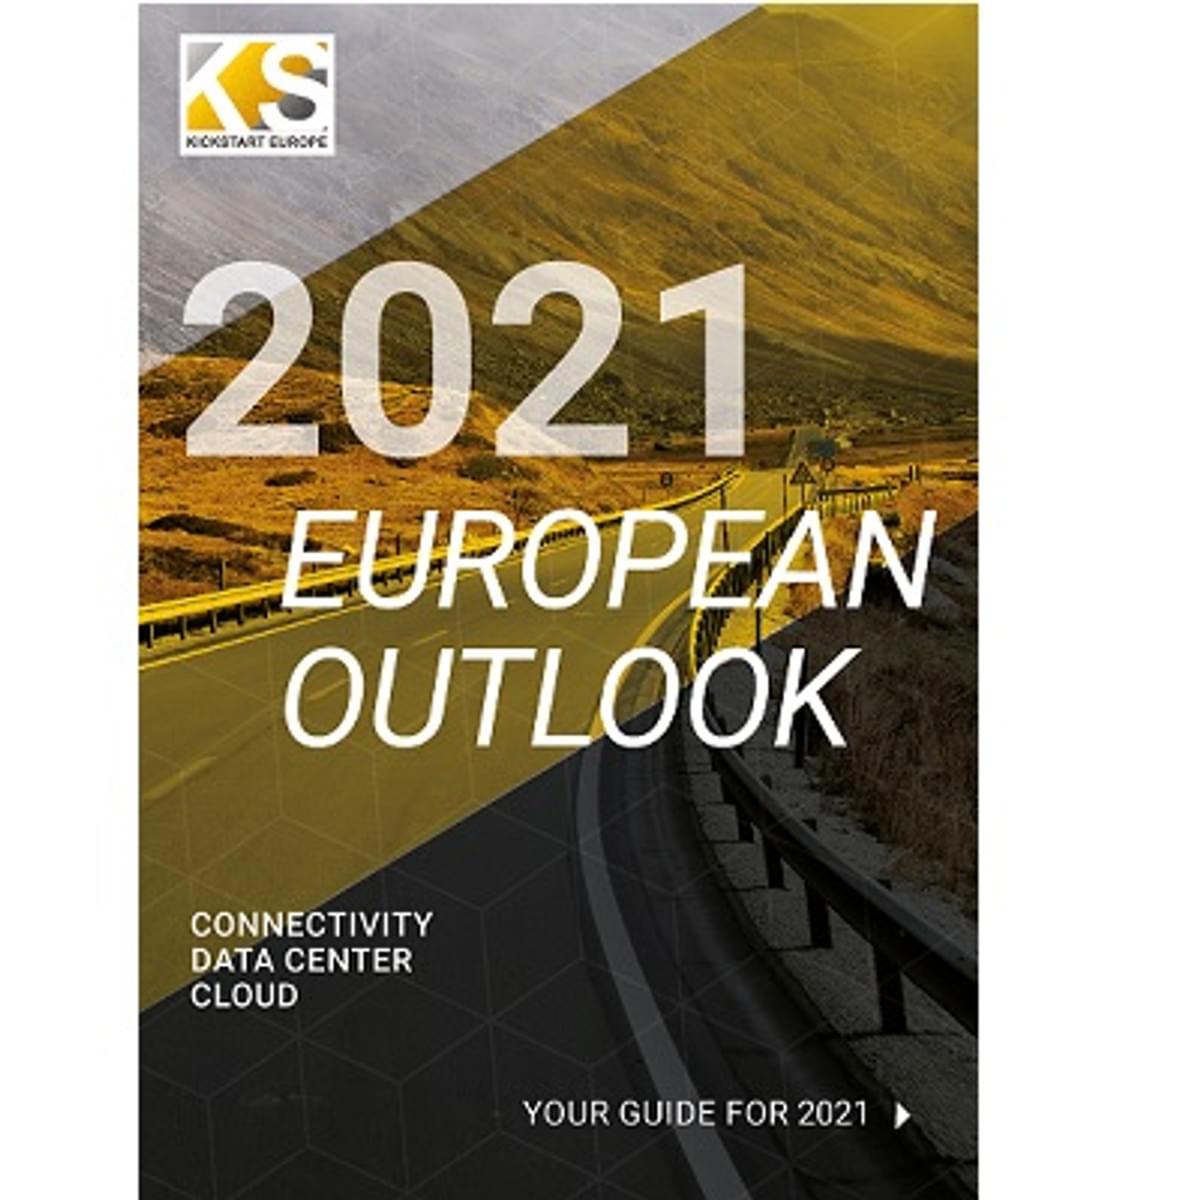 KickStart Europe rapport belicht cloud, datacenters, IT en business trends image